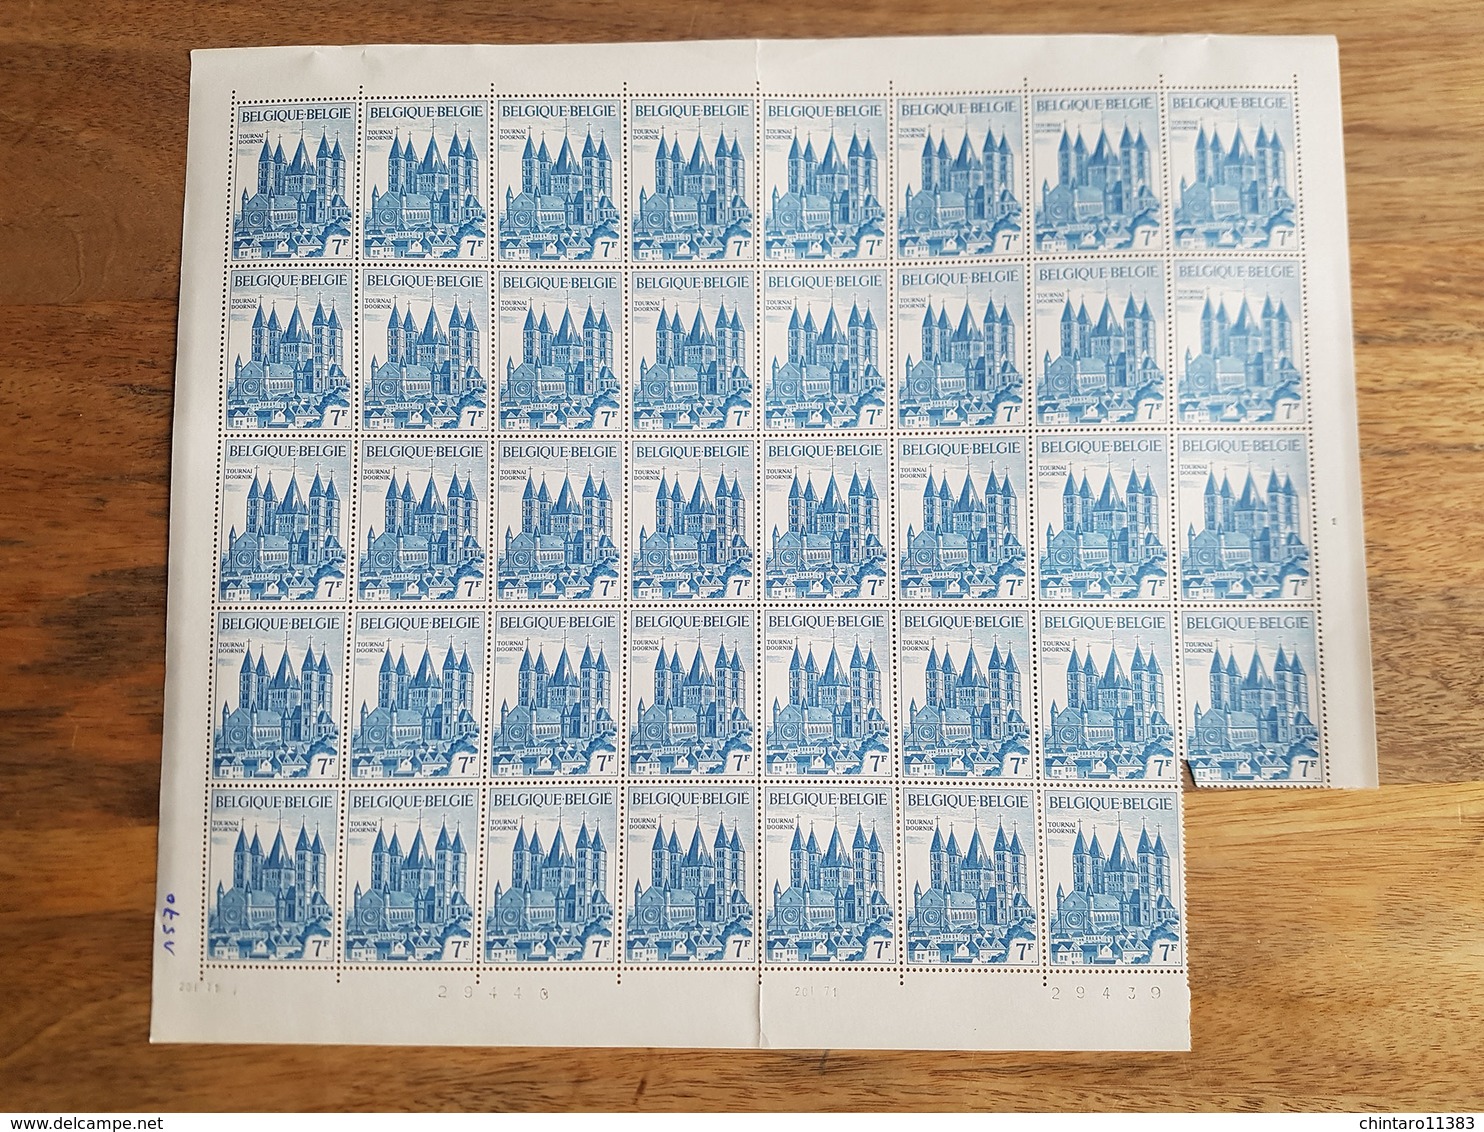 Lot feuilles incomplètes de timbres Belgique - Année 1971